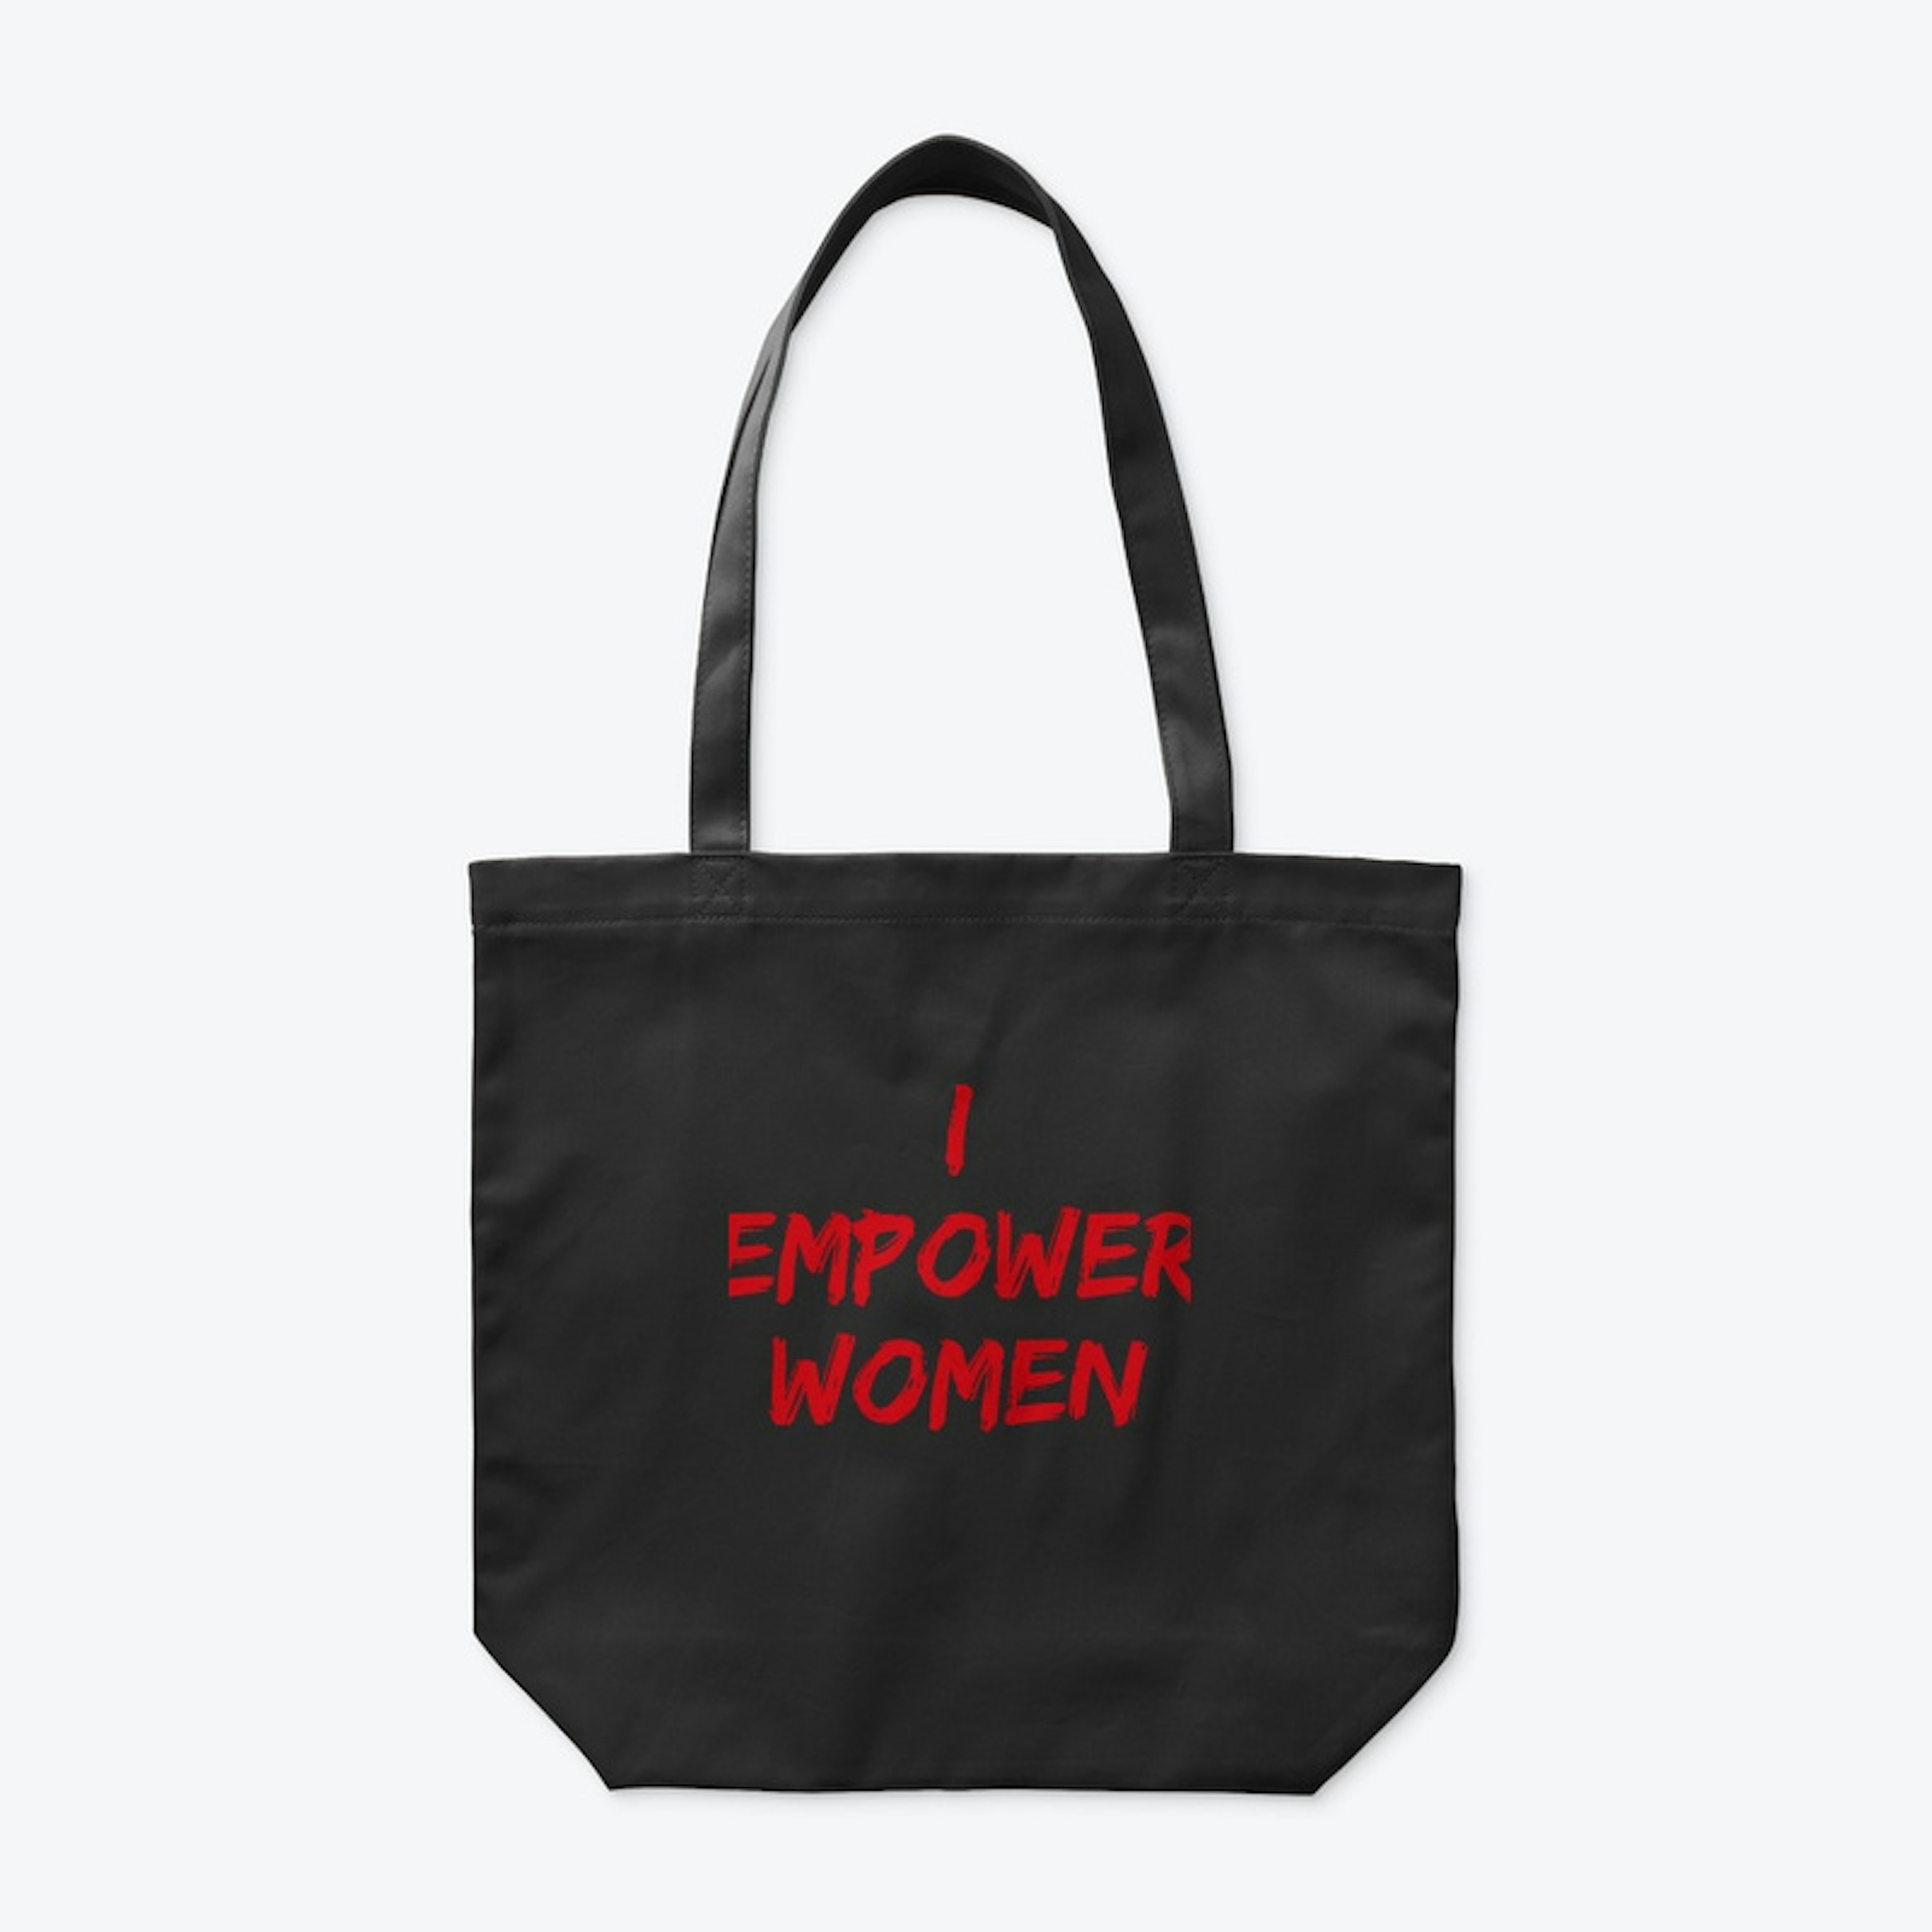 I empower women